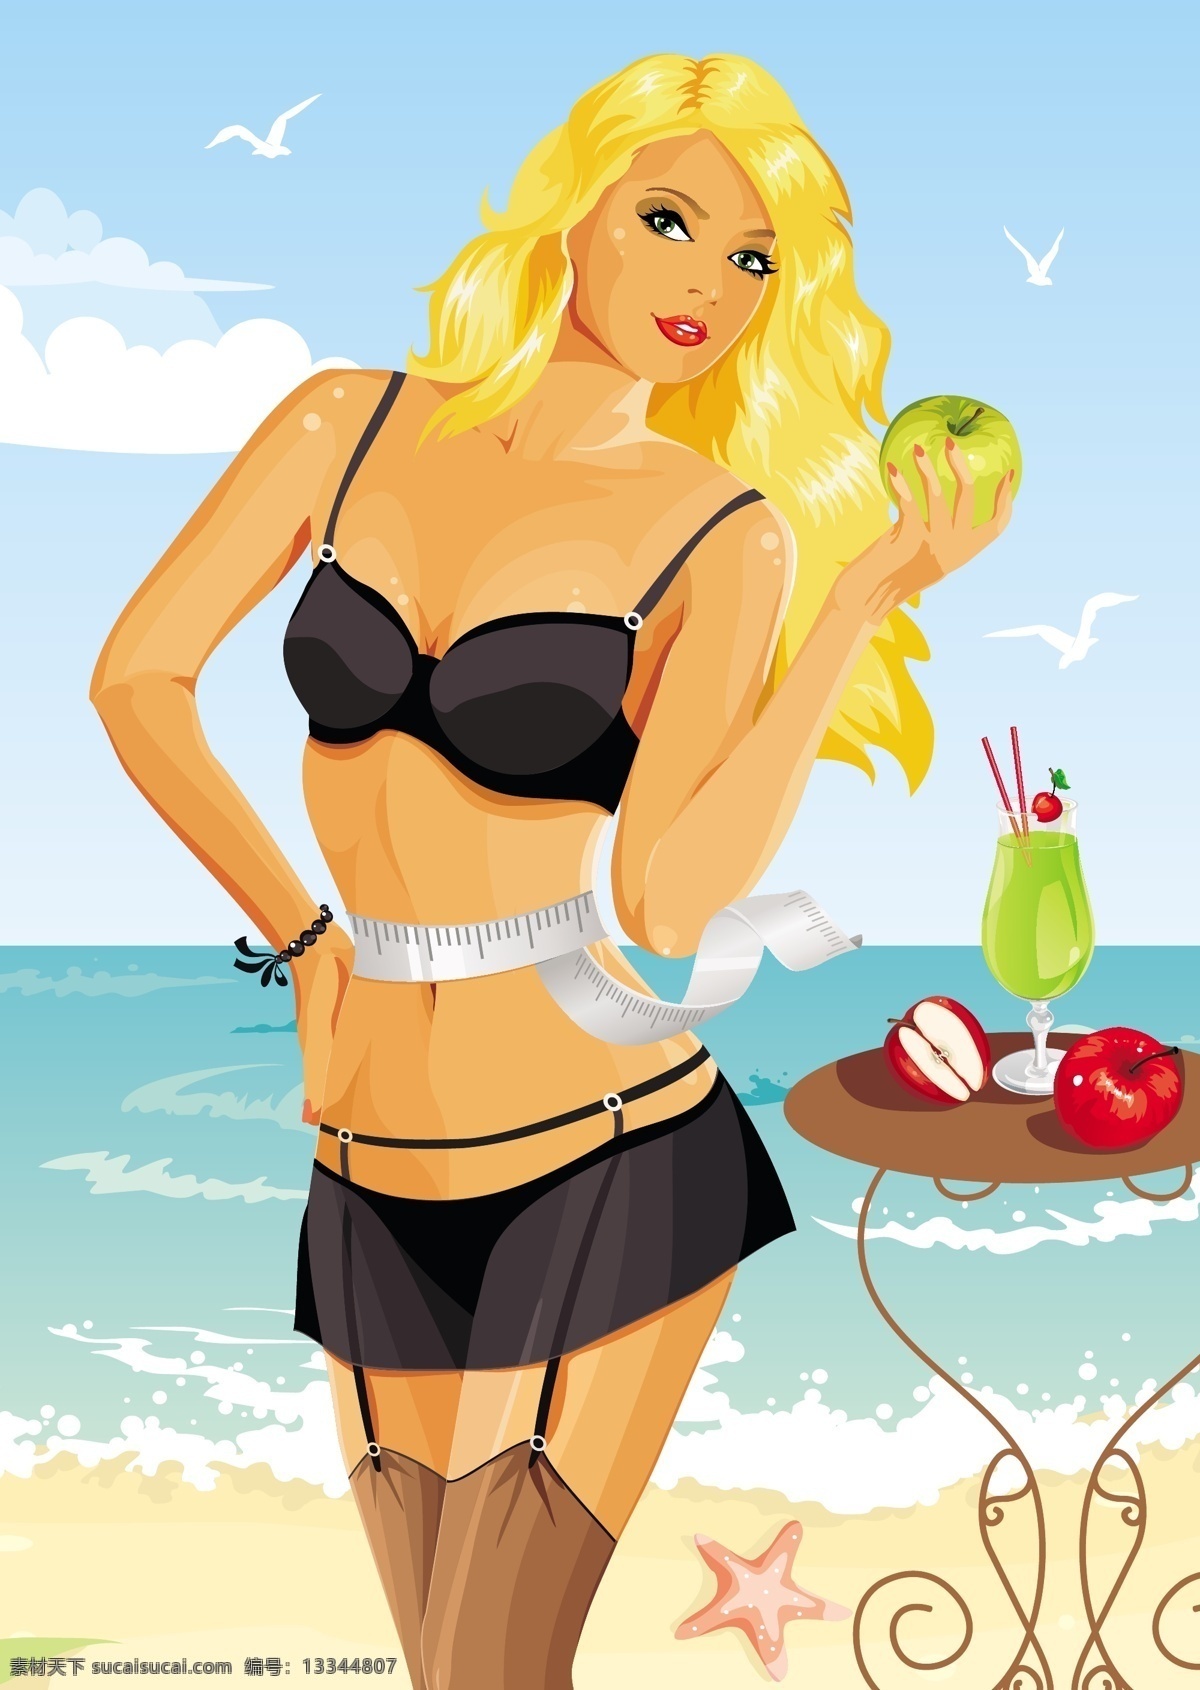 吃 苹果 减肥 女孩 瘦身 时尚 美女 女人 女郎 女士 沙滩 海滩 海洋 手绘 卡通 背景 底纹 矢量 女孩剪影 妇女女性 矢量人物